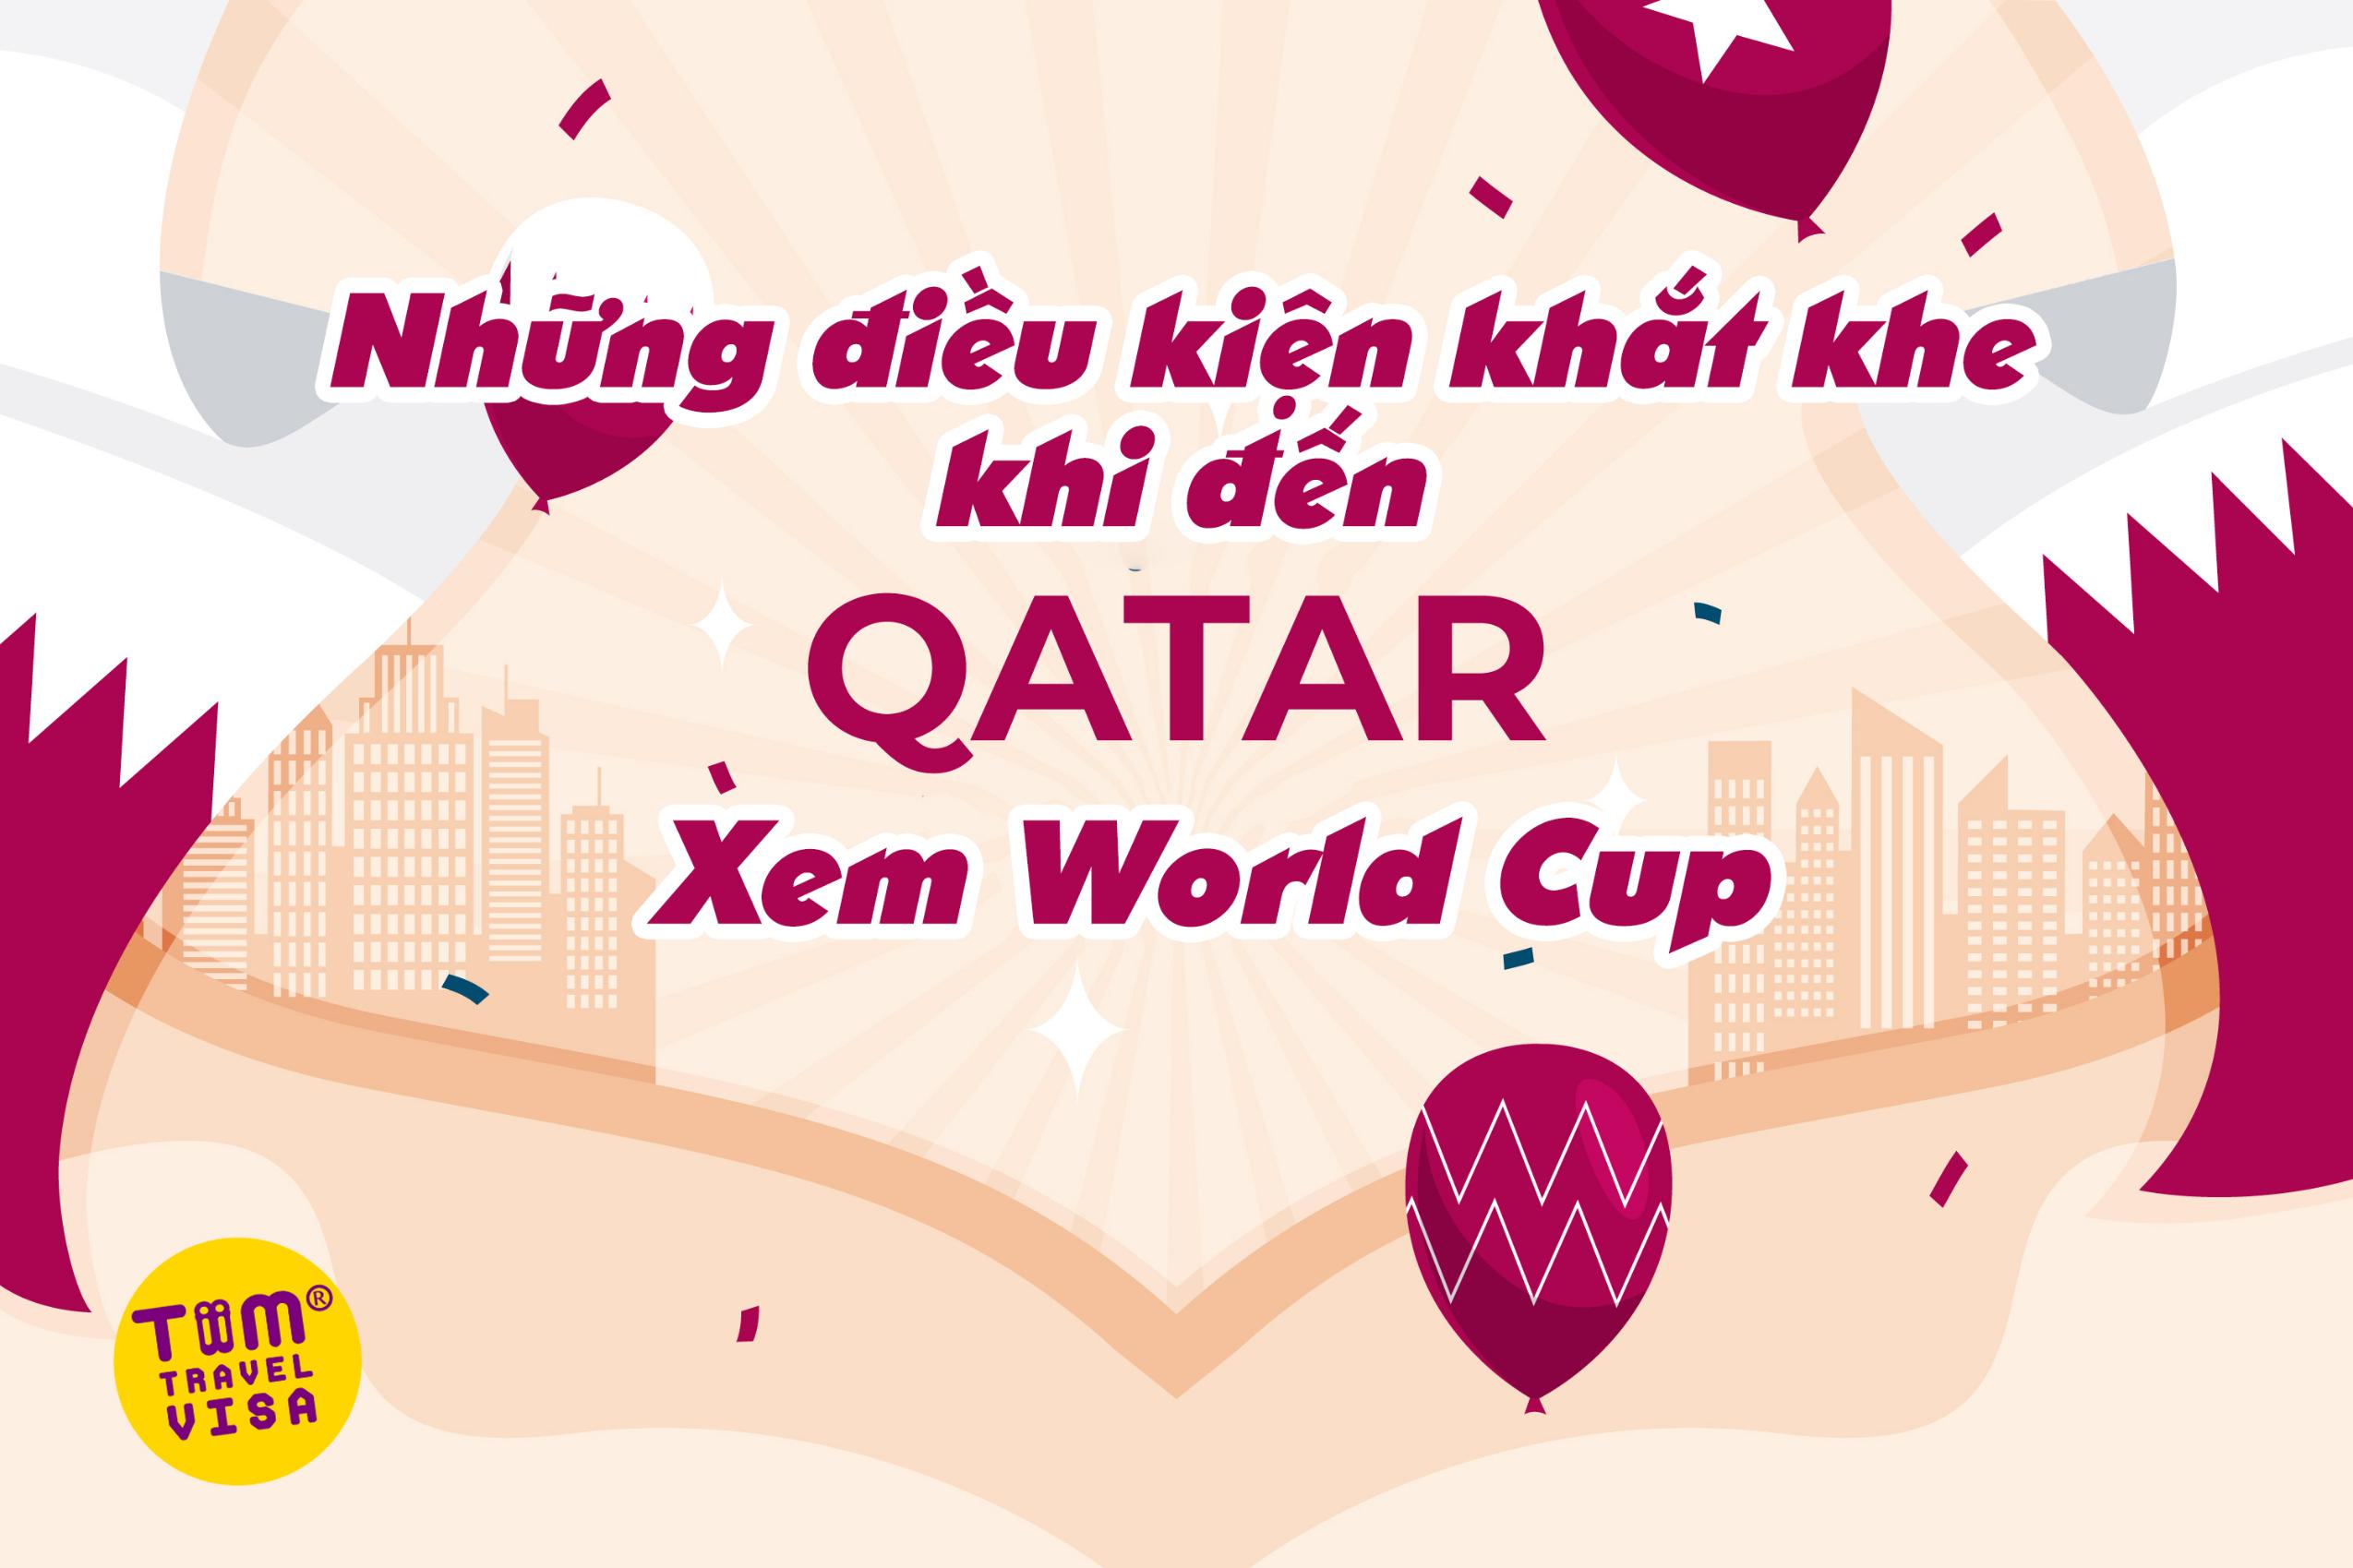 Những điều kiện khắt khe khi đến Qatar xem World Cup